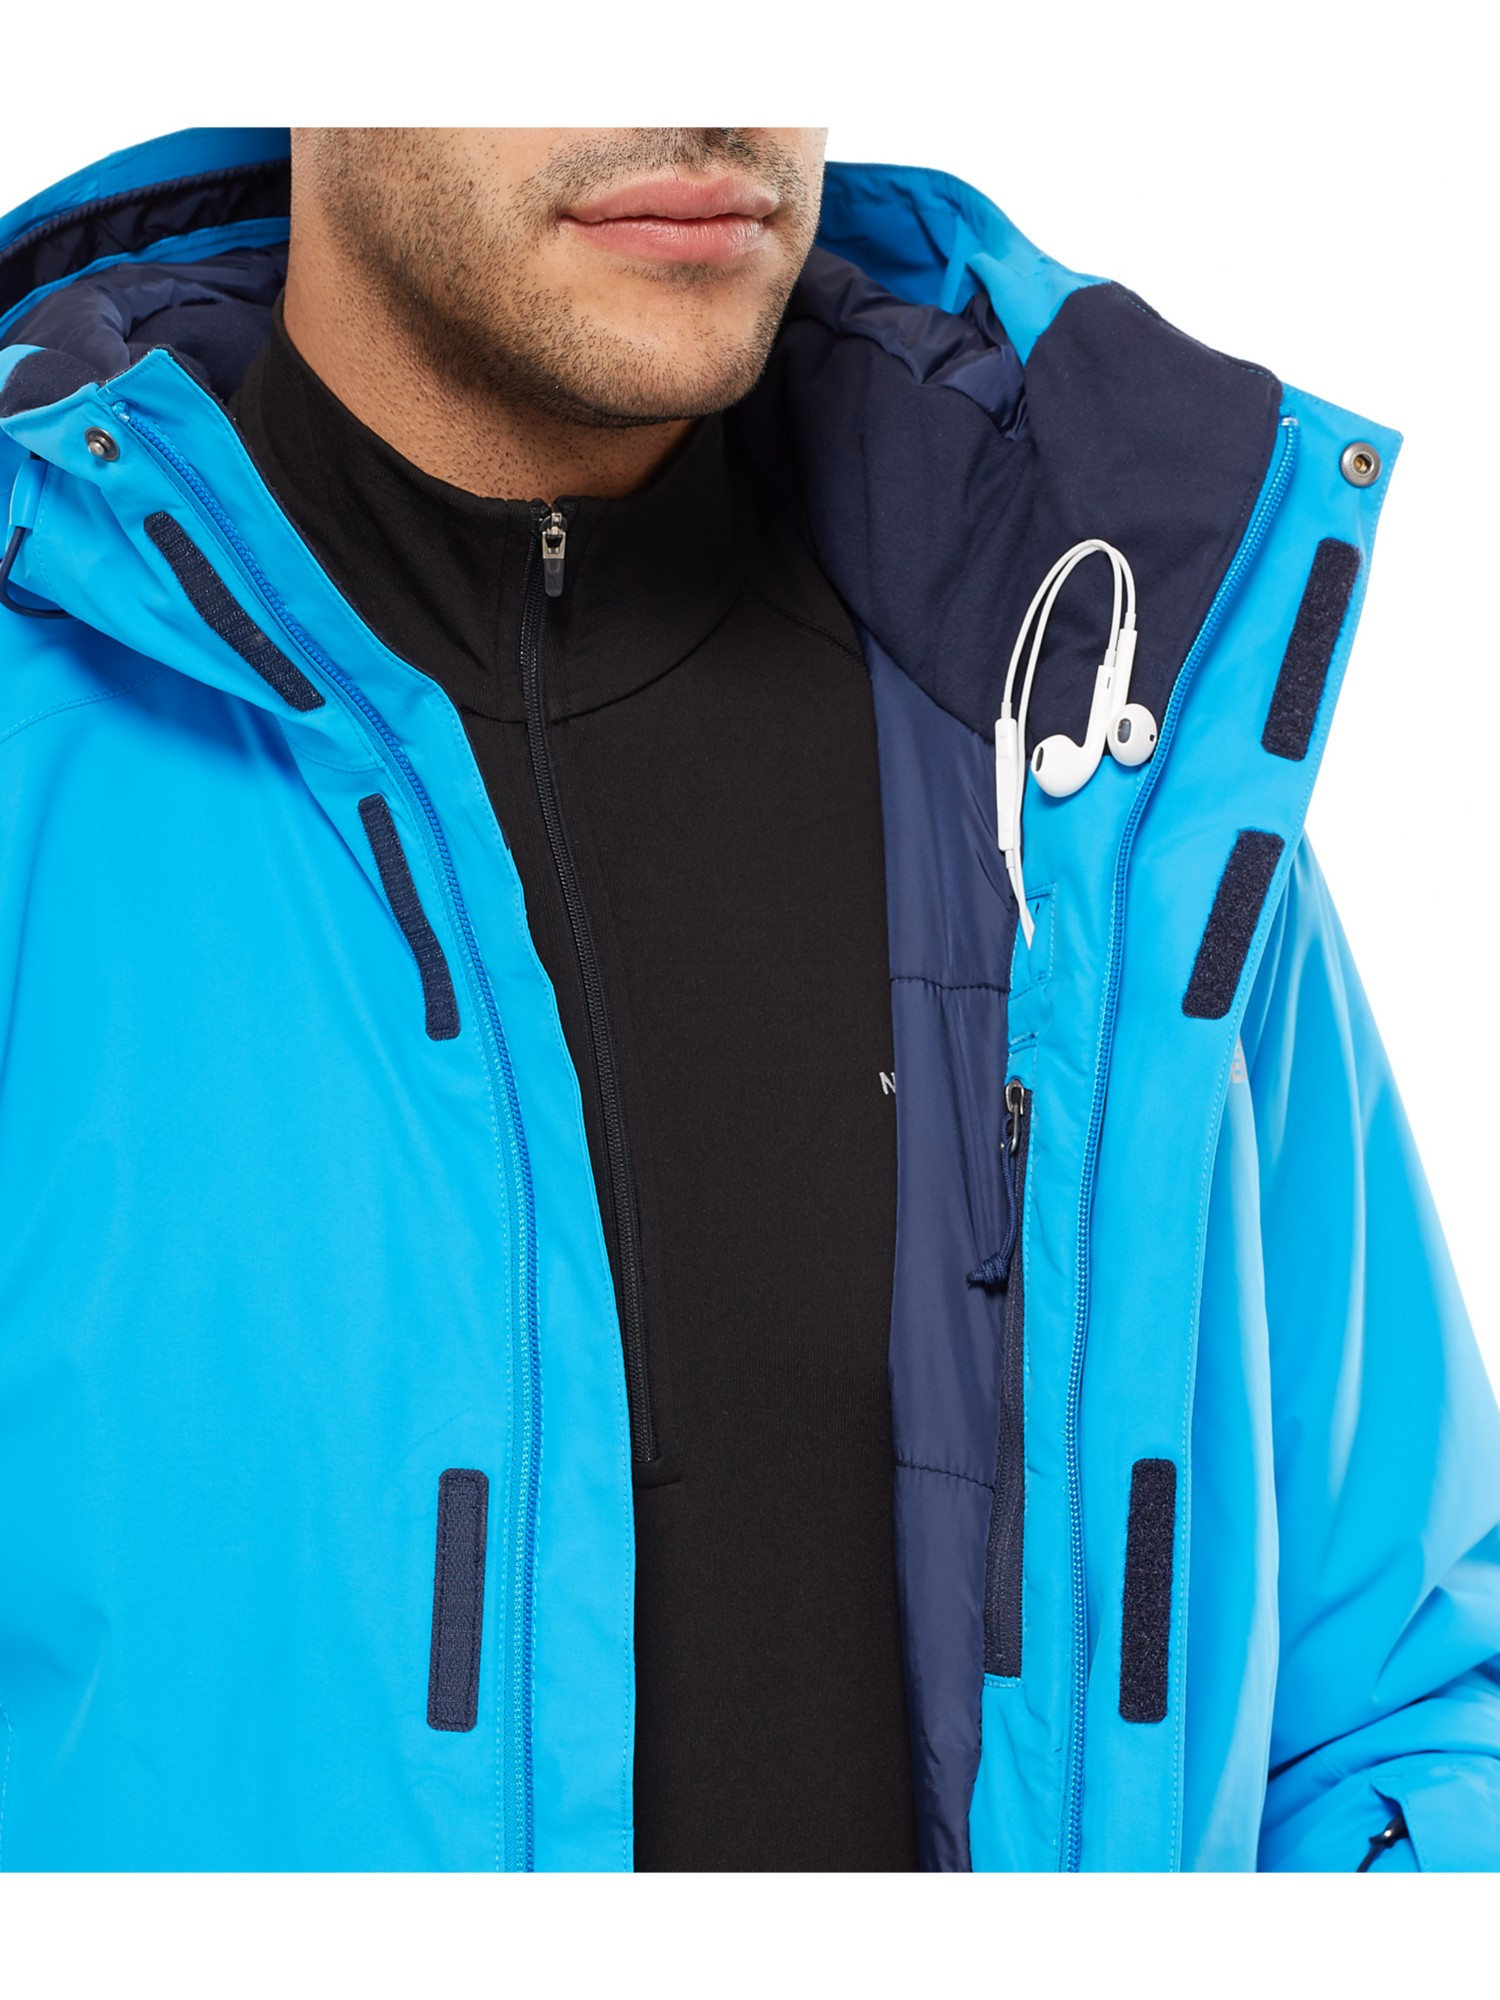 north face descendit ski jacket review